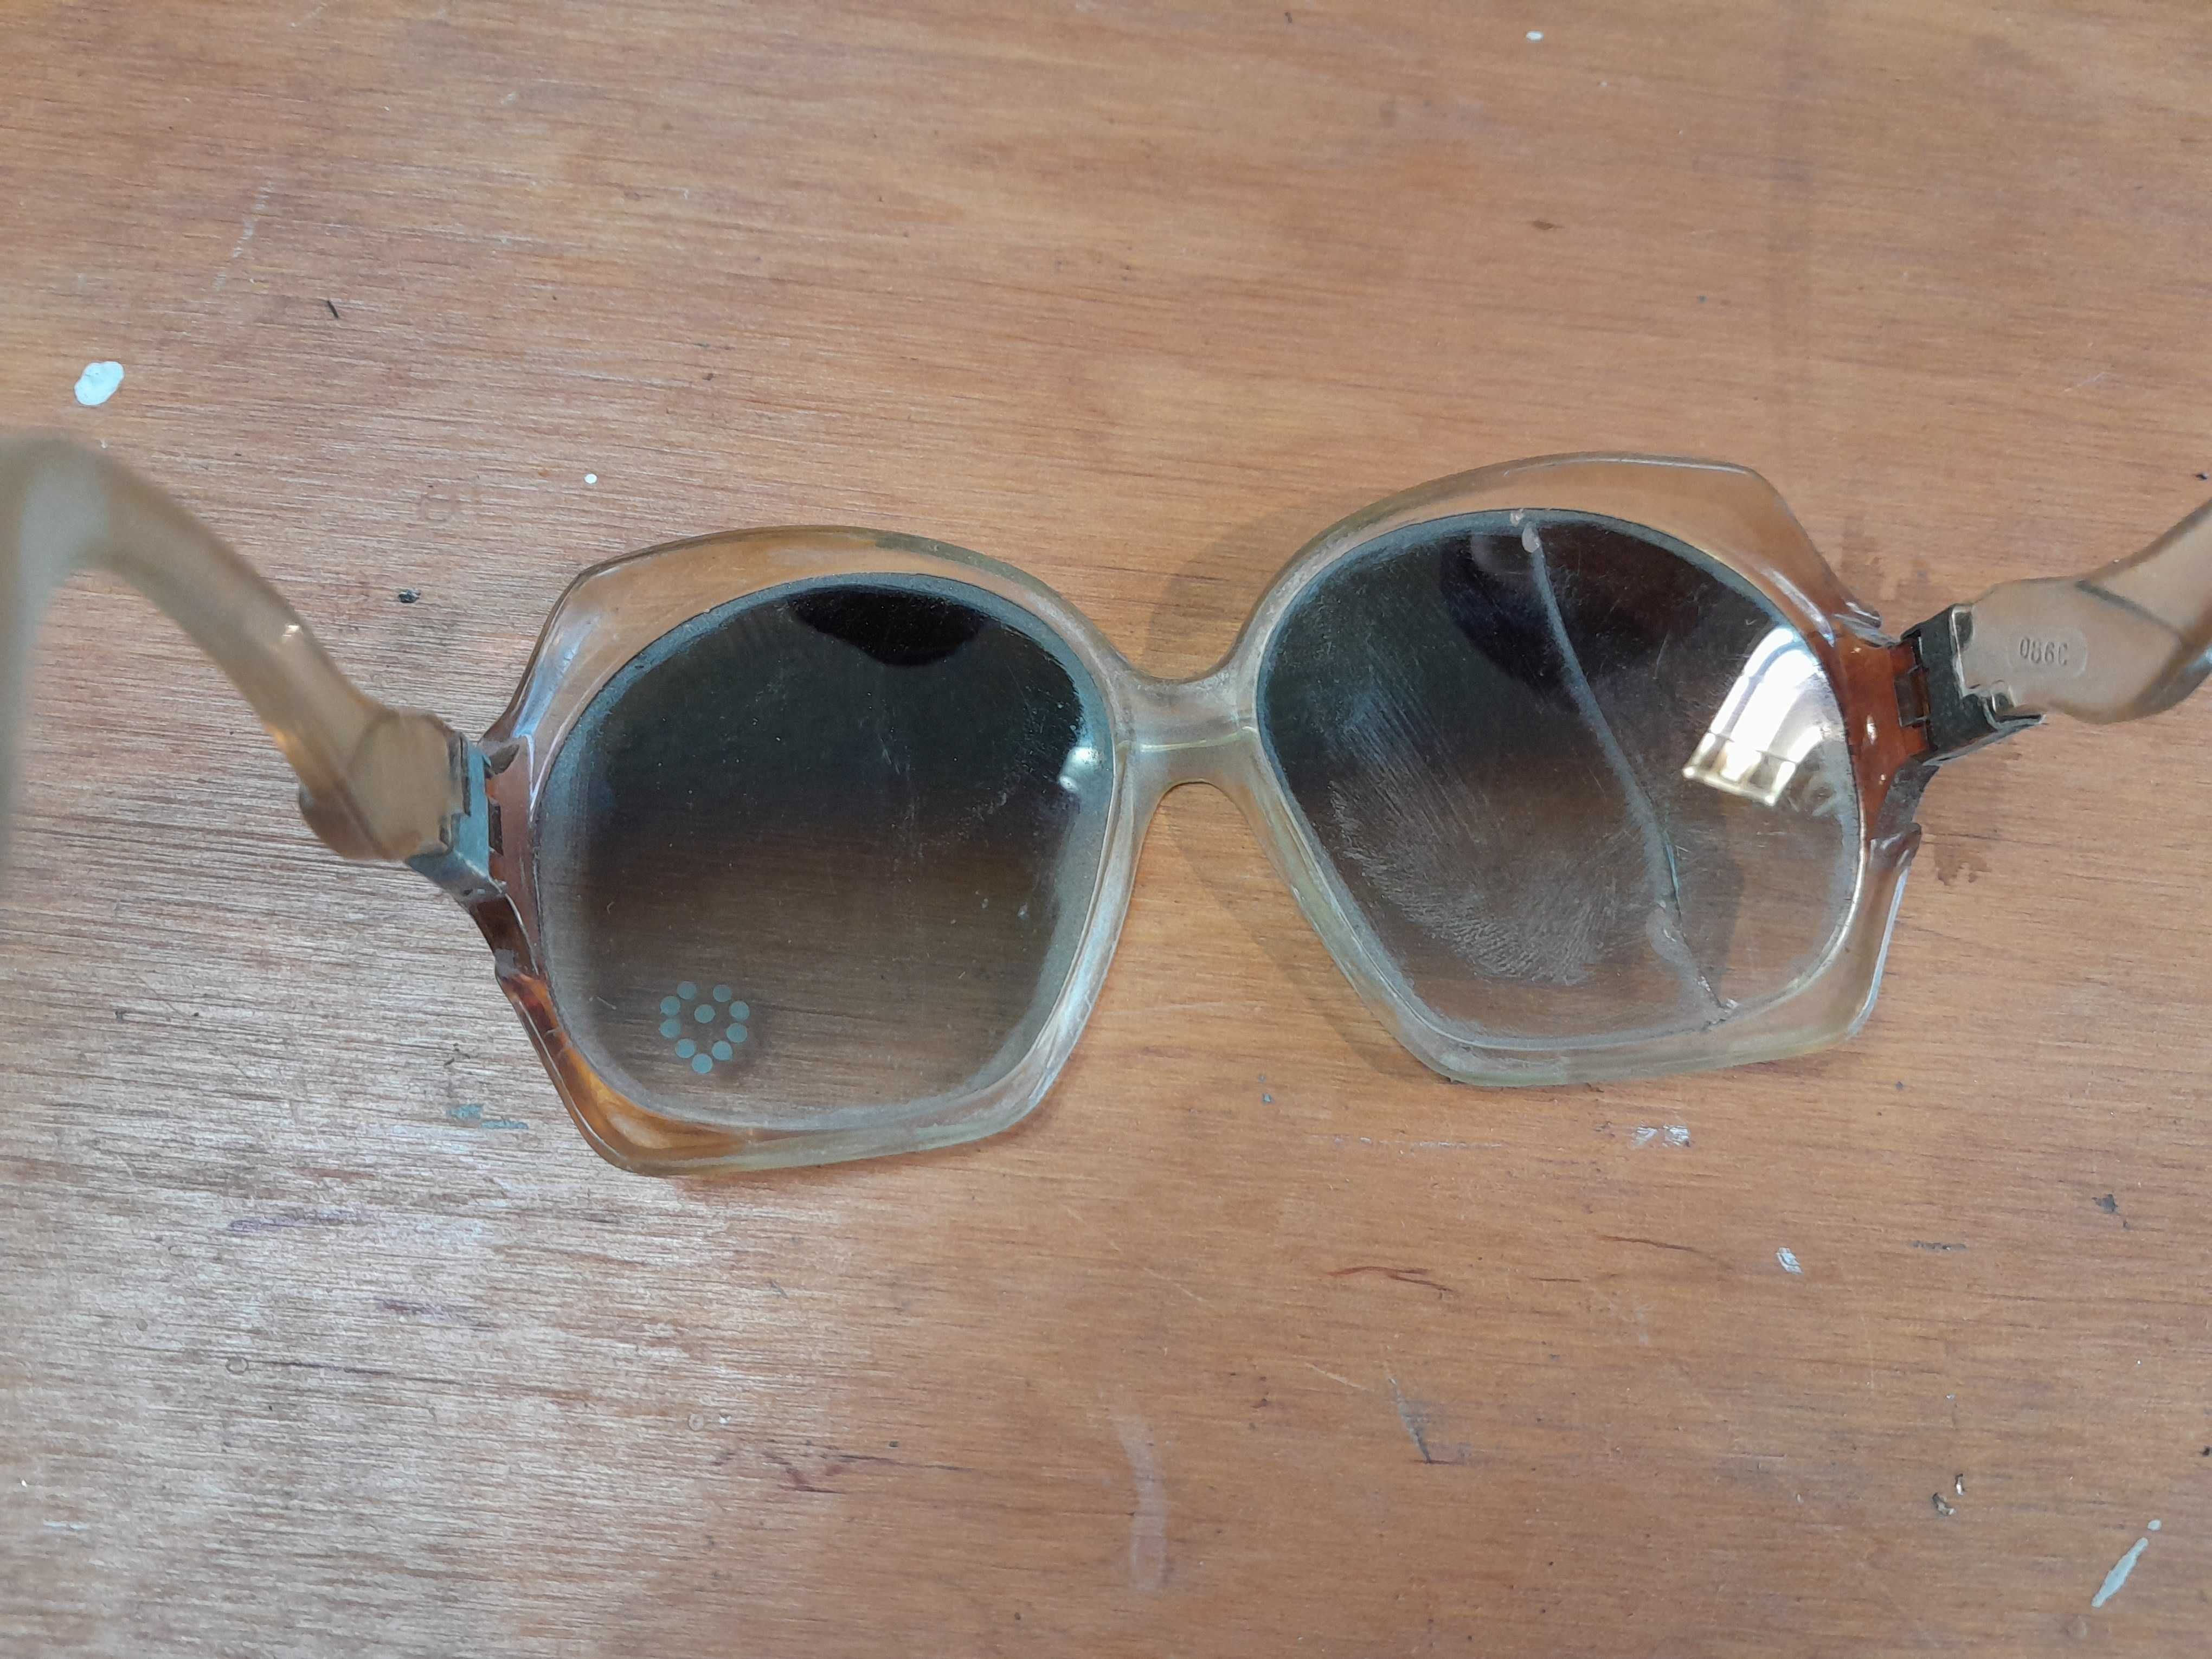 Stare okulary z czasów PRL przeciwsłoneczne gadżet z epoki